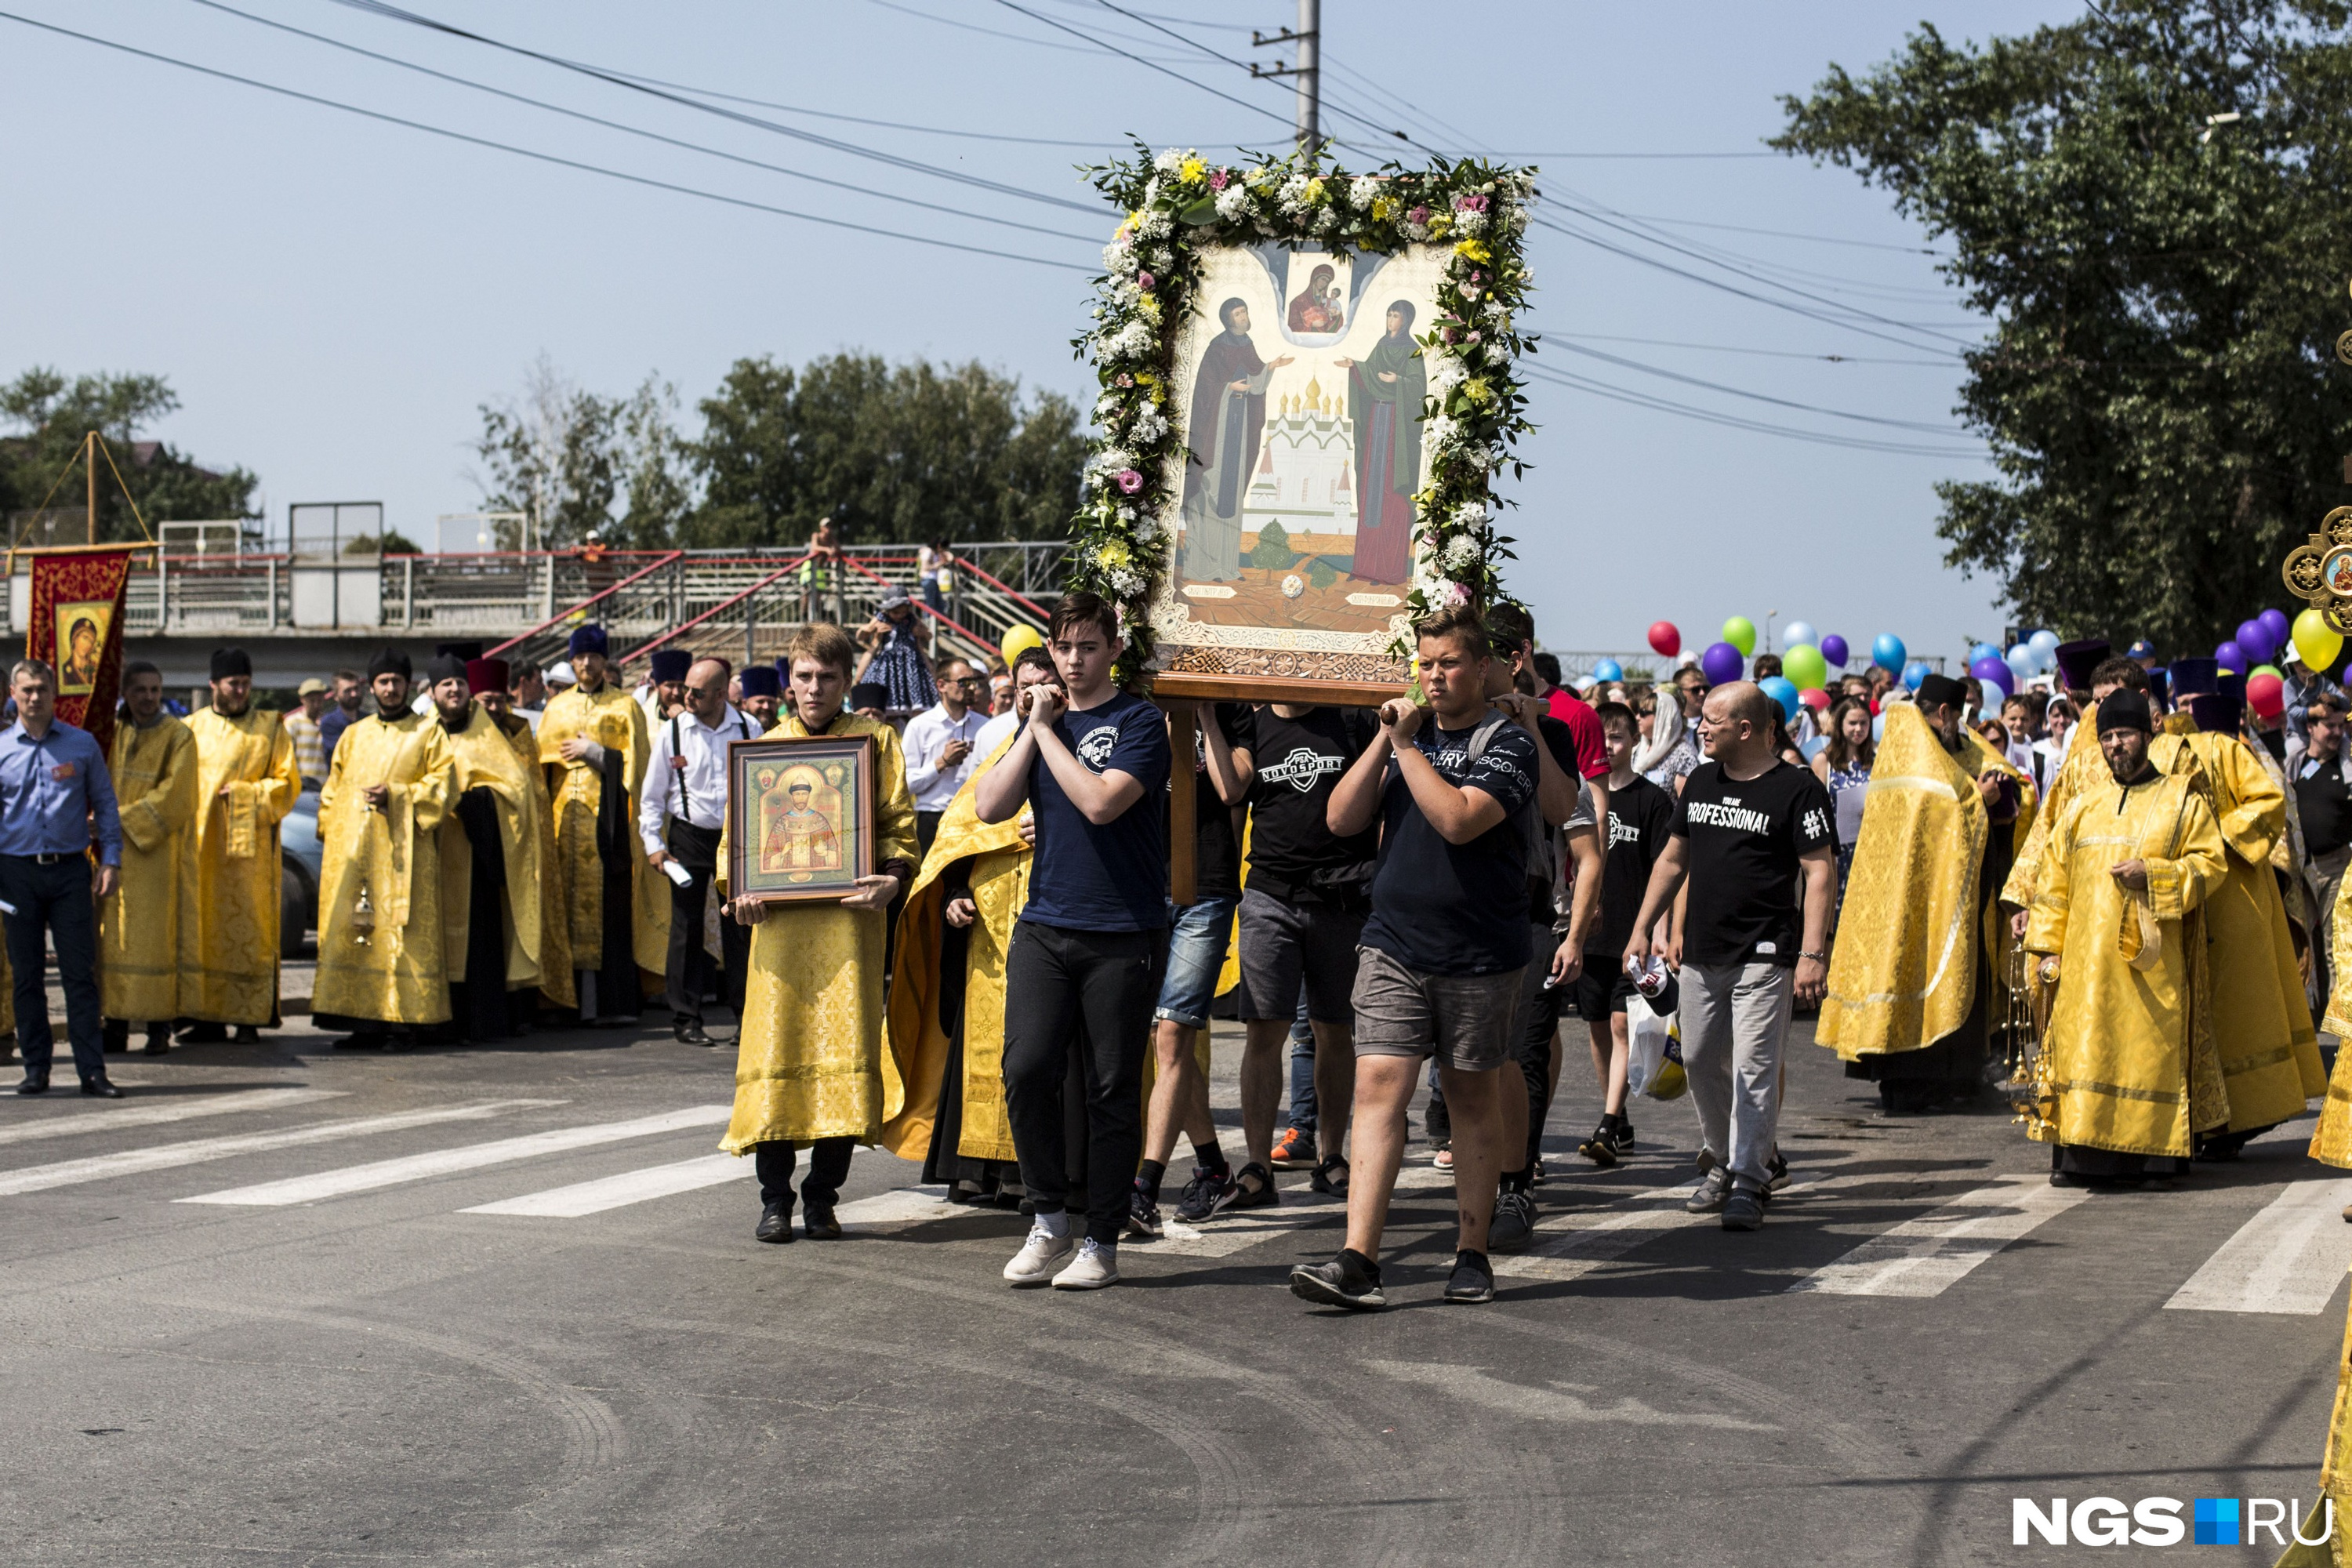 Во главе шествия верующие несли икону святых Петра и Февронии — покровителей православных семей